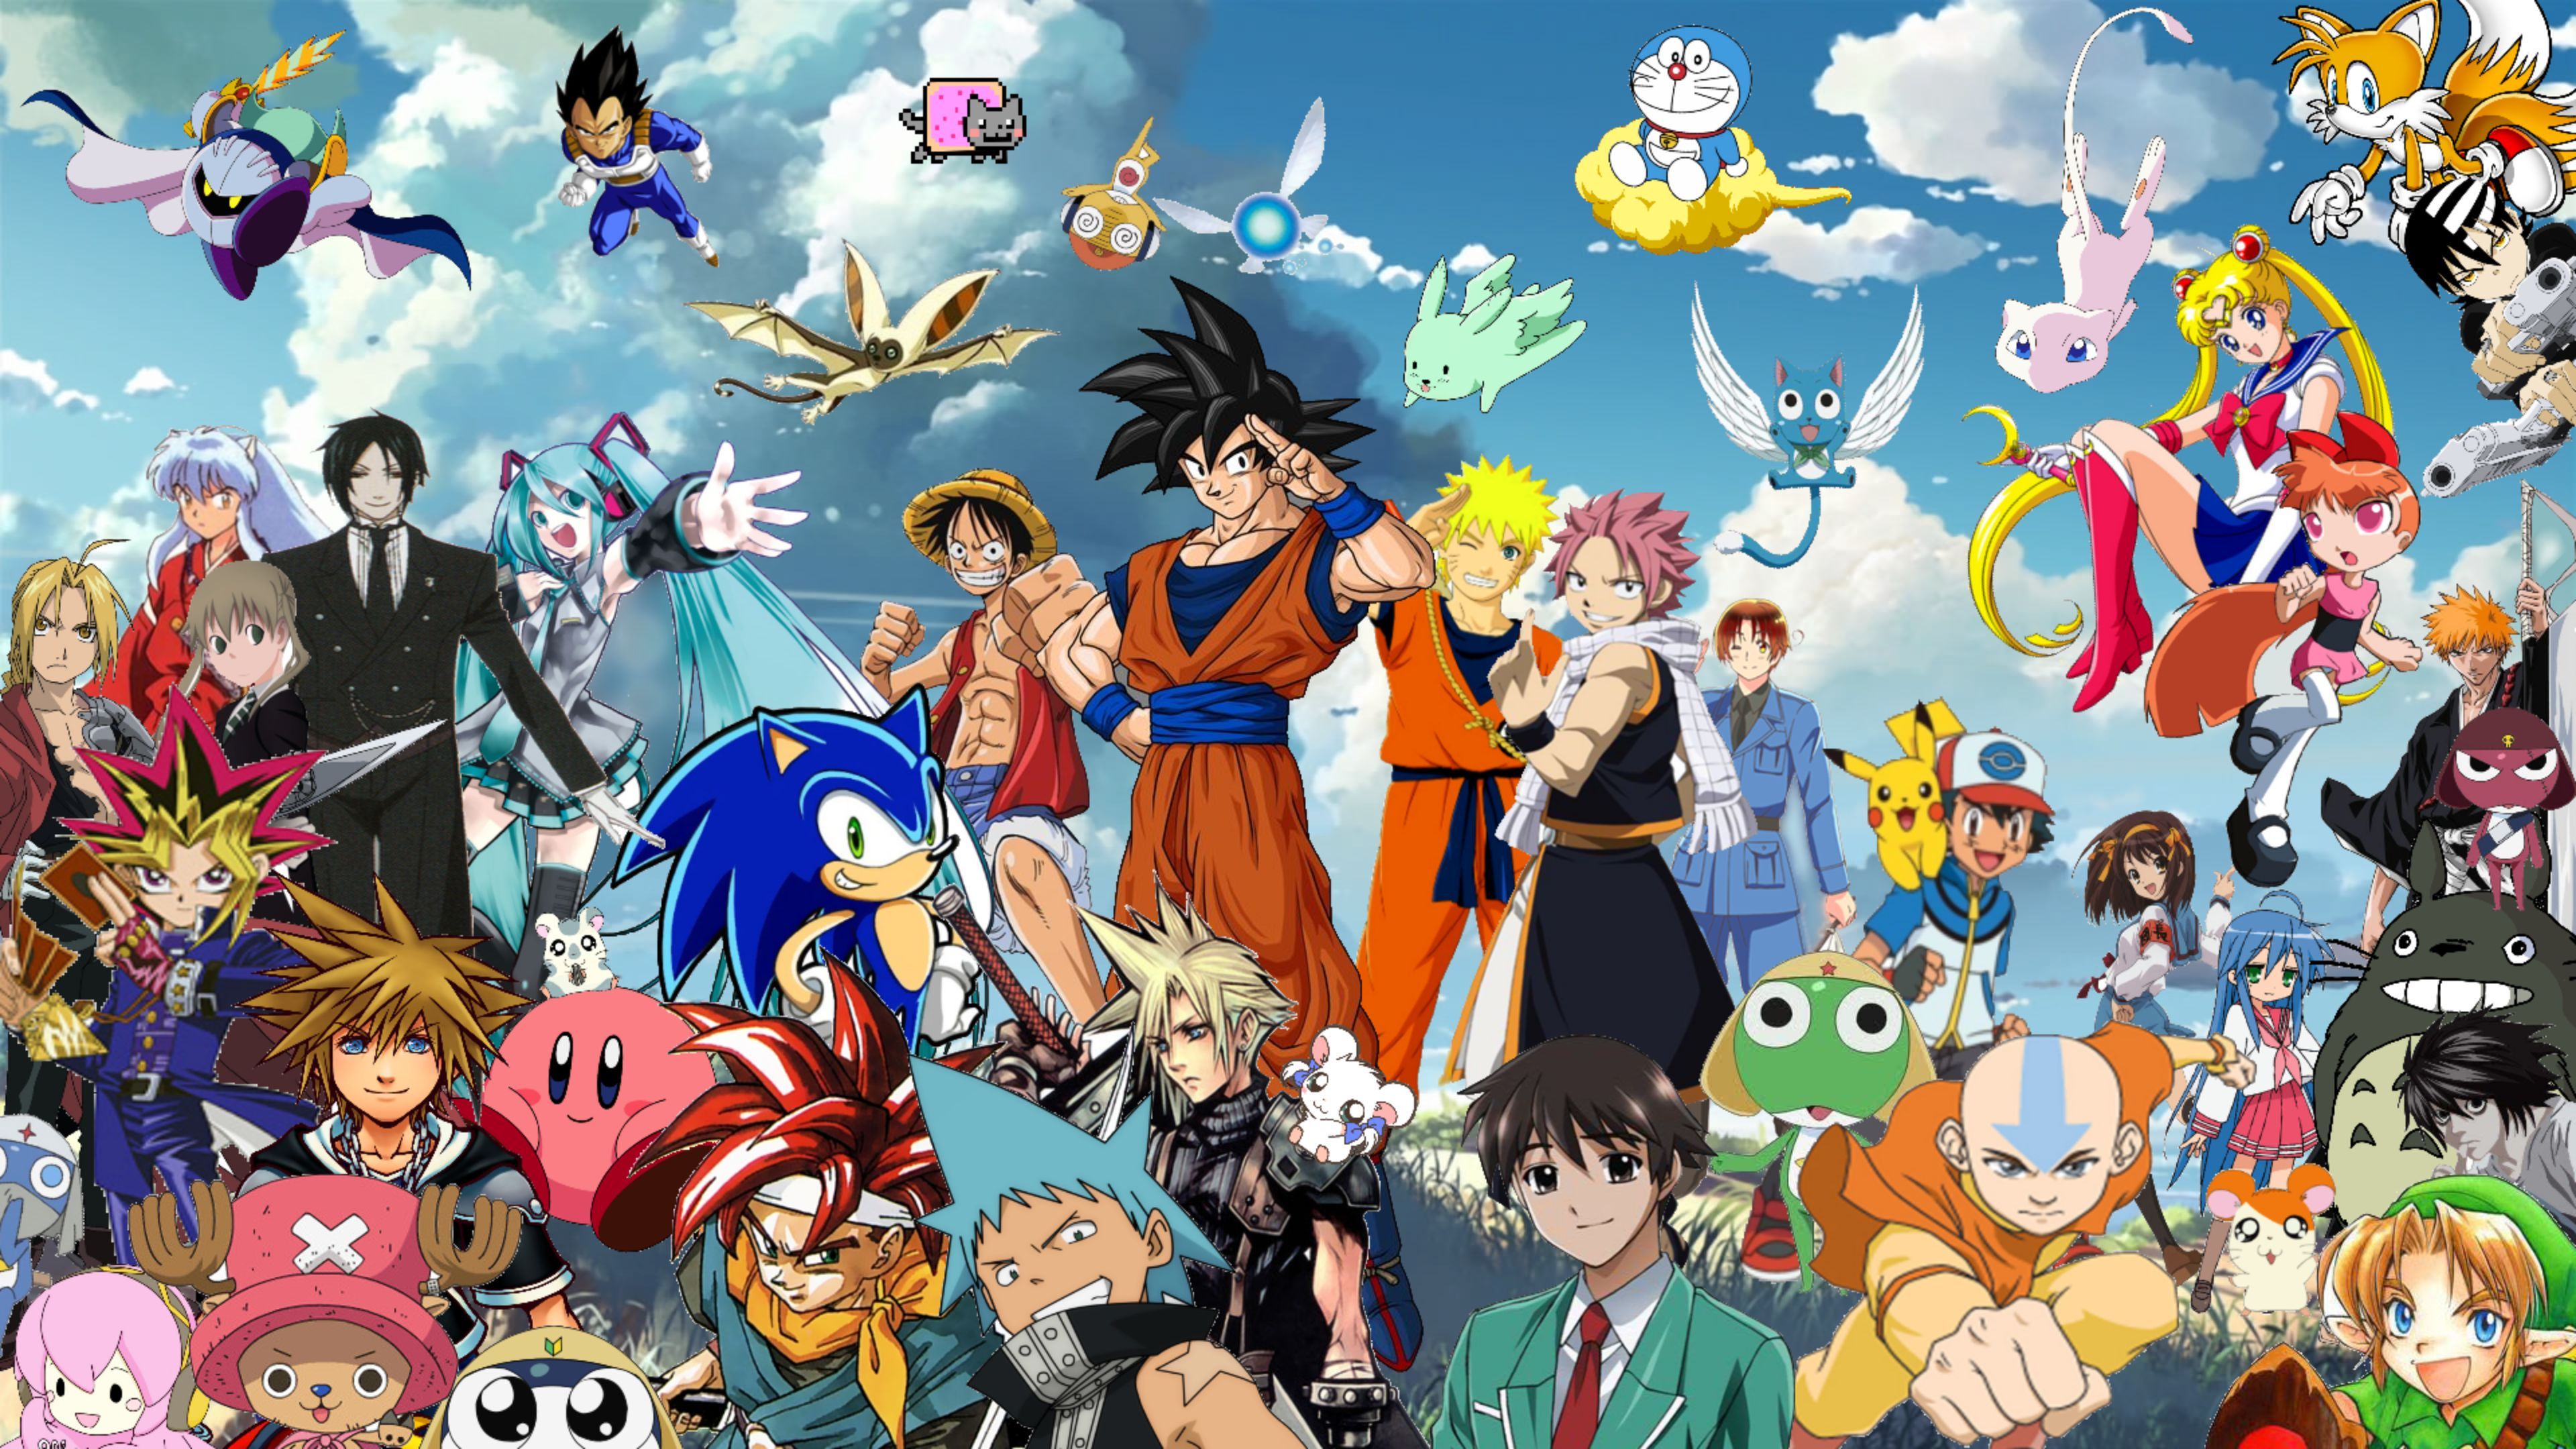 Hình nền nhân vật anime đầy màu sắc tại đây! Các nhân vật anime trong hình nền này vô cùng đáng yêu, sôi động và đầy năng lượng. Chắc chắn các bạn sẽ rất thích tìm hiểu về những nhân vật này trong anime.